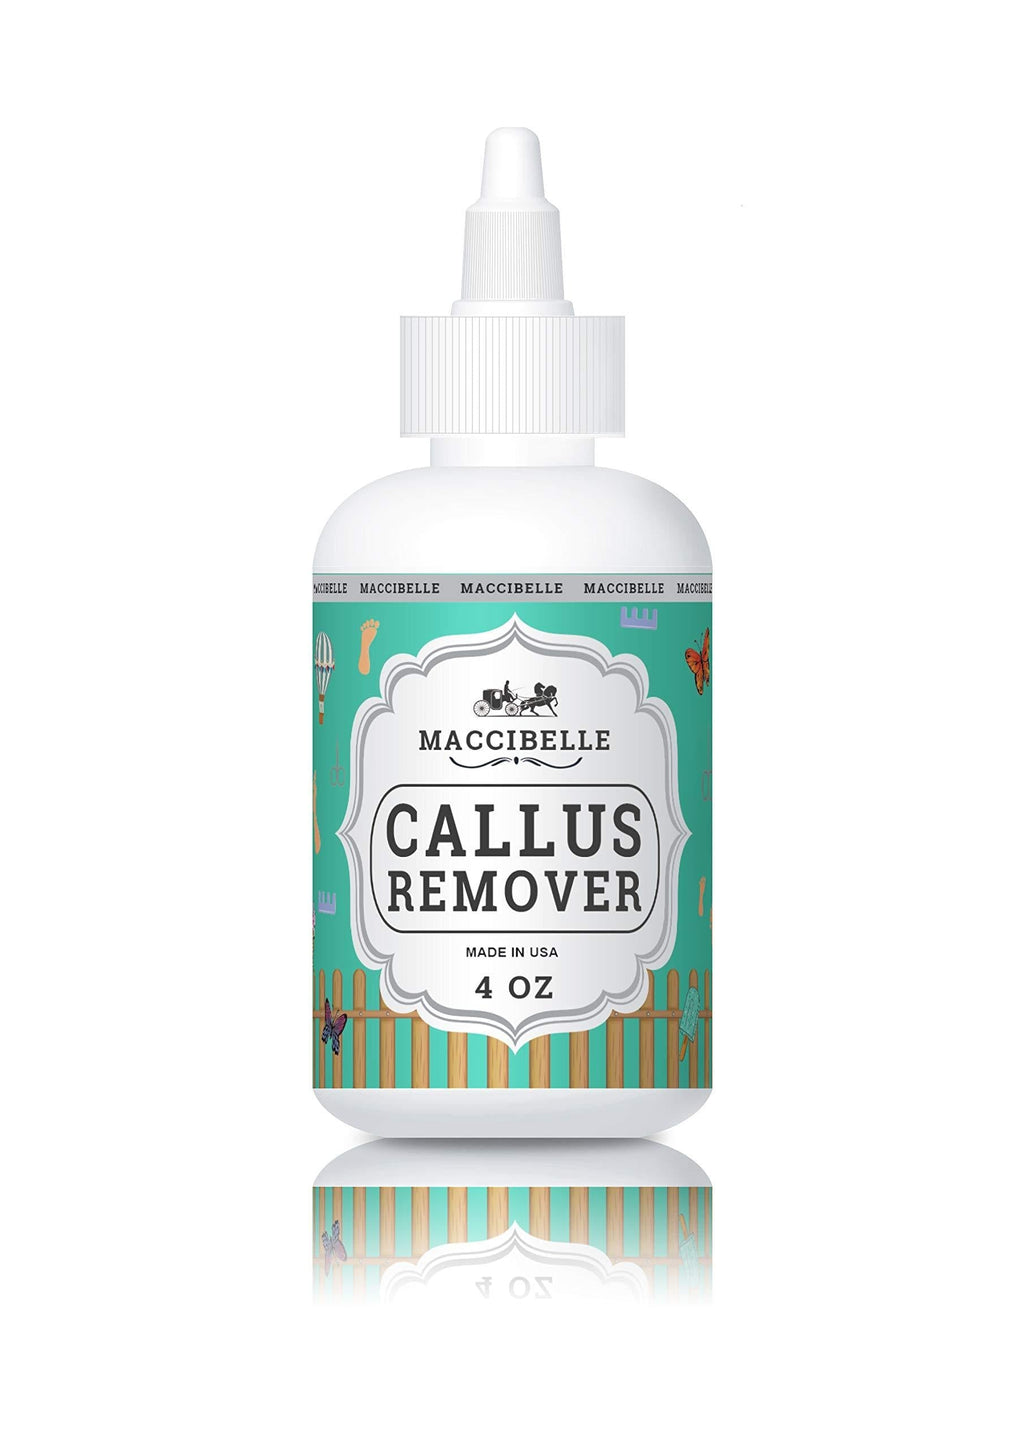 [Australia] - Maccibelle Callus Remover EXTRA STRENGTH For Feet, Professional Callus and Corn Eliminator Liquid Gel 4 oz Pack of 1 